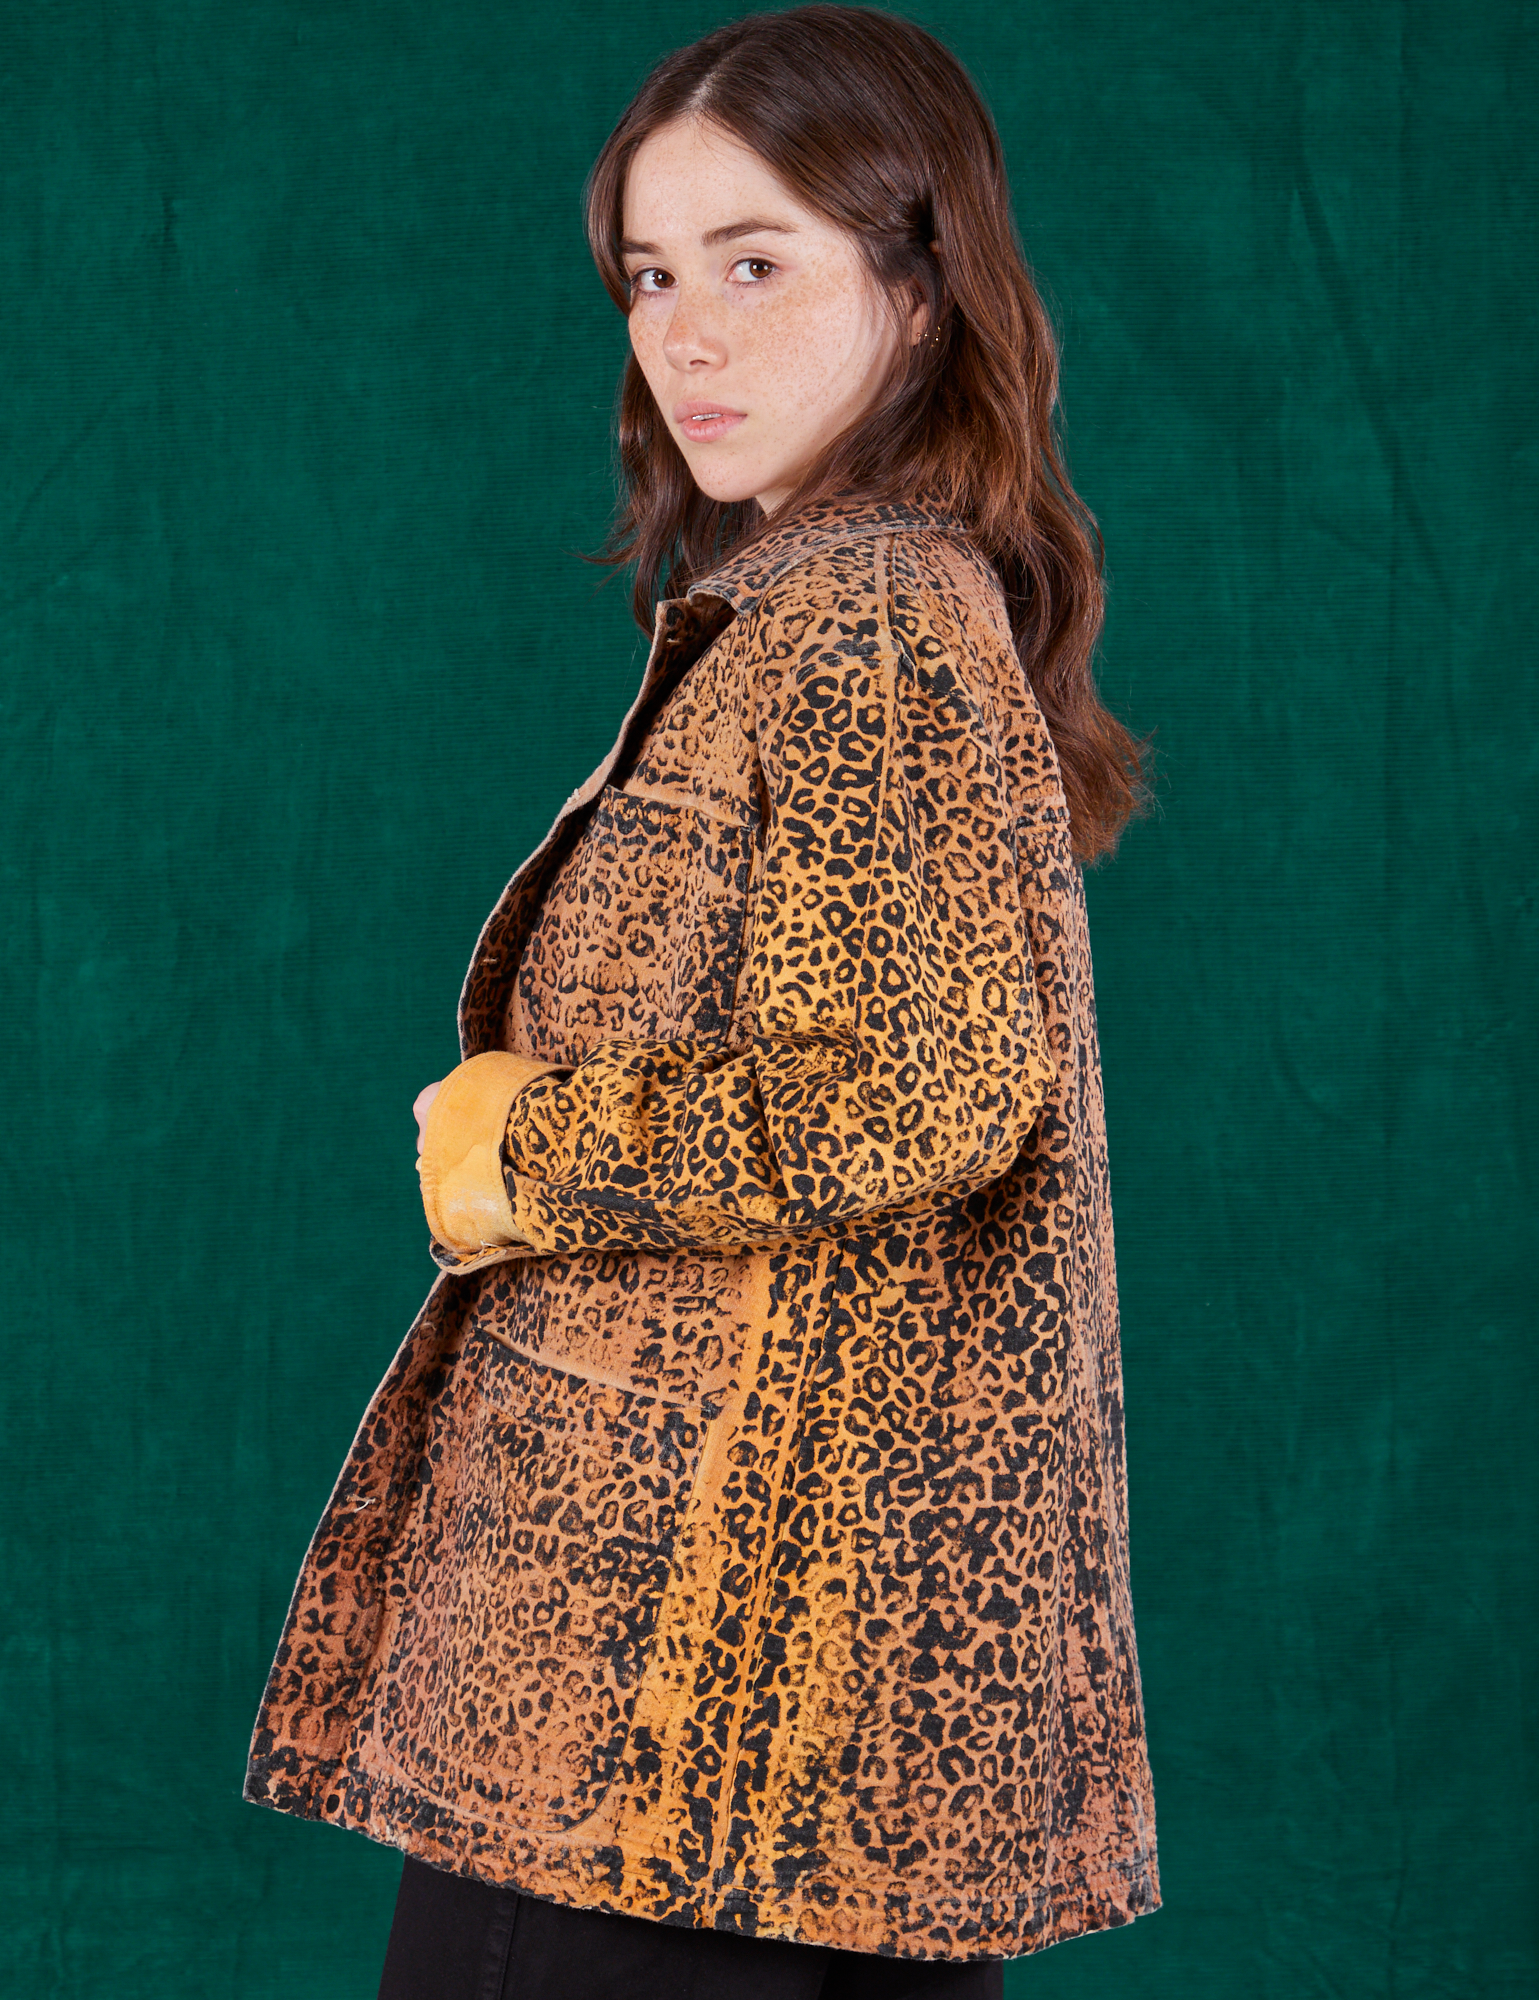 Field Coat in Leopard Print side view on Hana